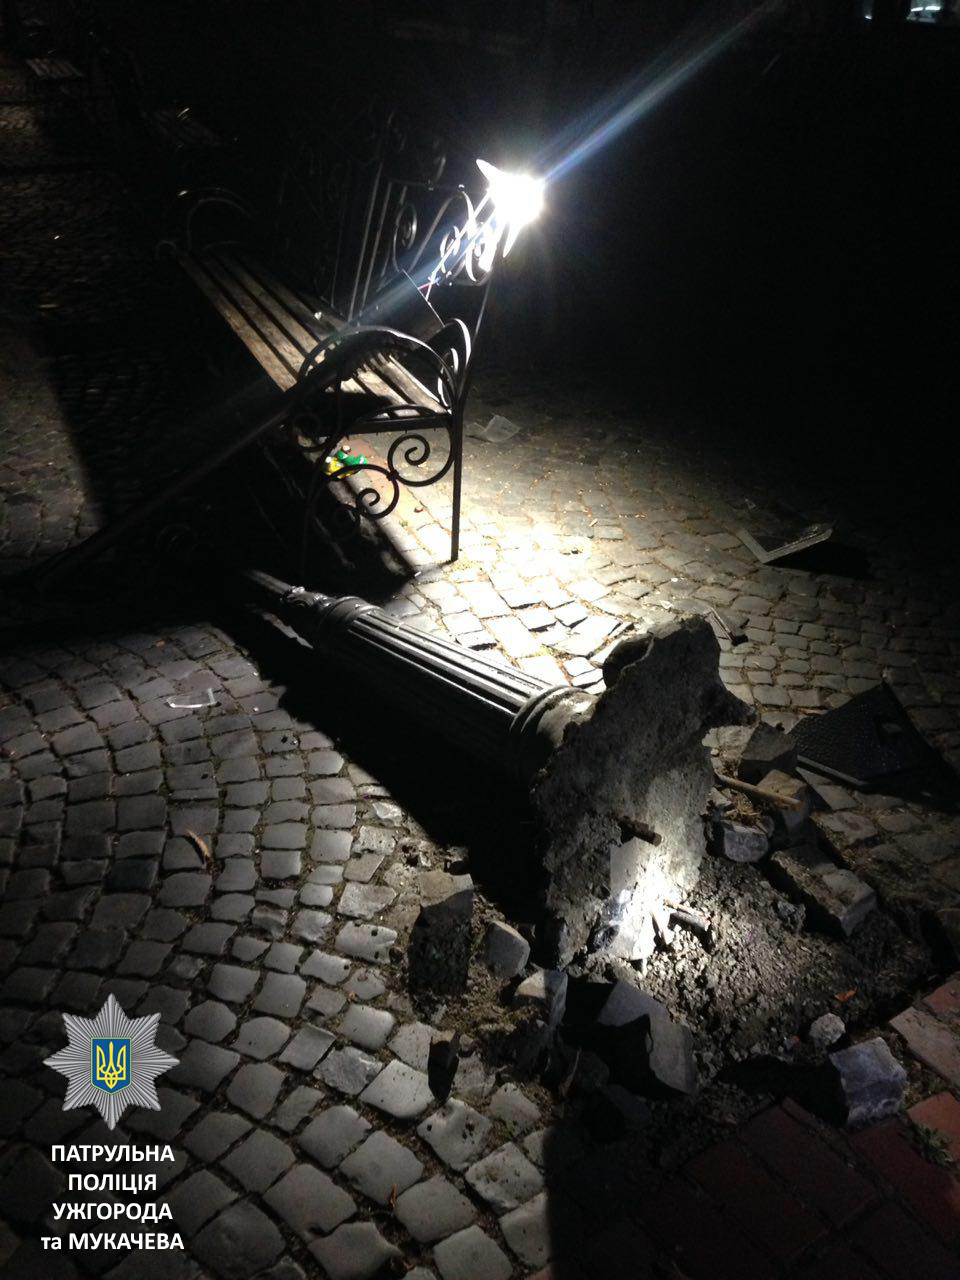 1-го жовтня близько 10-ї години вечора екіпаж мукачівських патрульних отримав повідомлення про пошкодження освітлювального ліхтаря на вулиці Пушкіна.